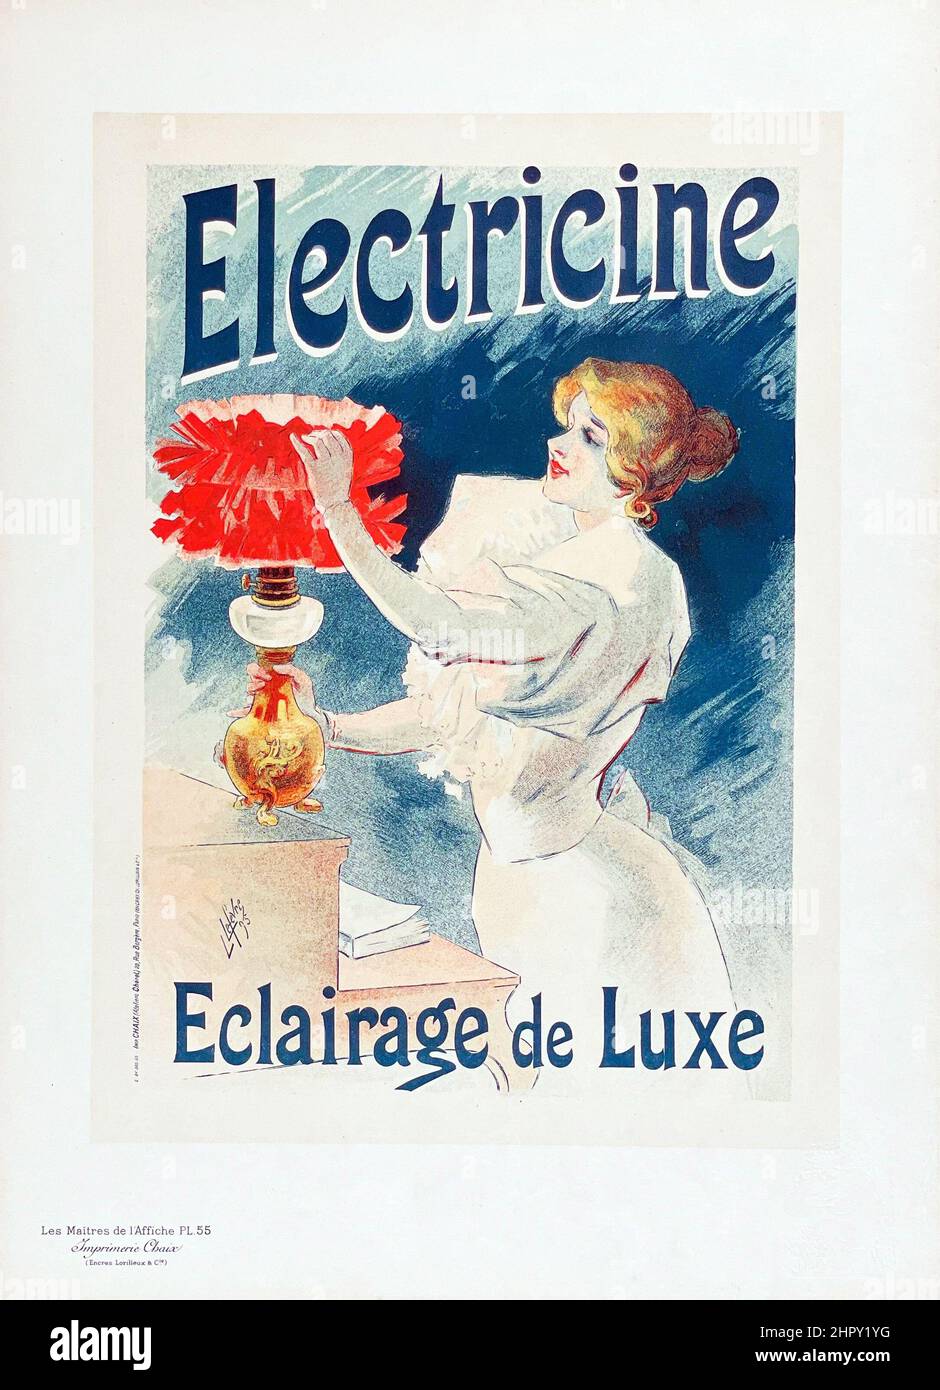 Les Maitres de l'Affiche - Maitres Affiches by Lucien Lefèvre - Electricine. Plate 55. 1897. Stock Photo